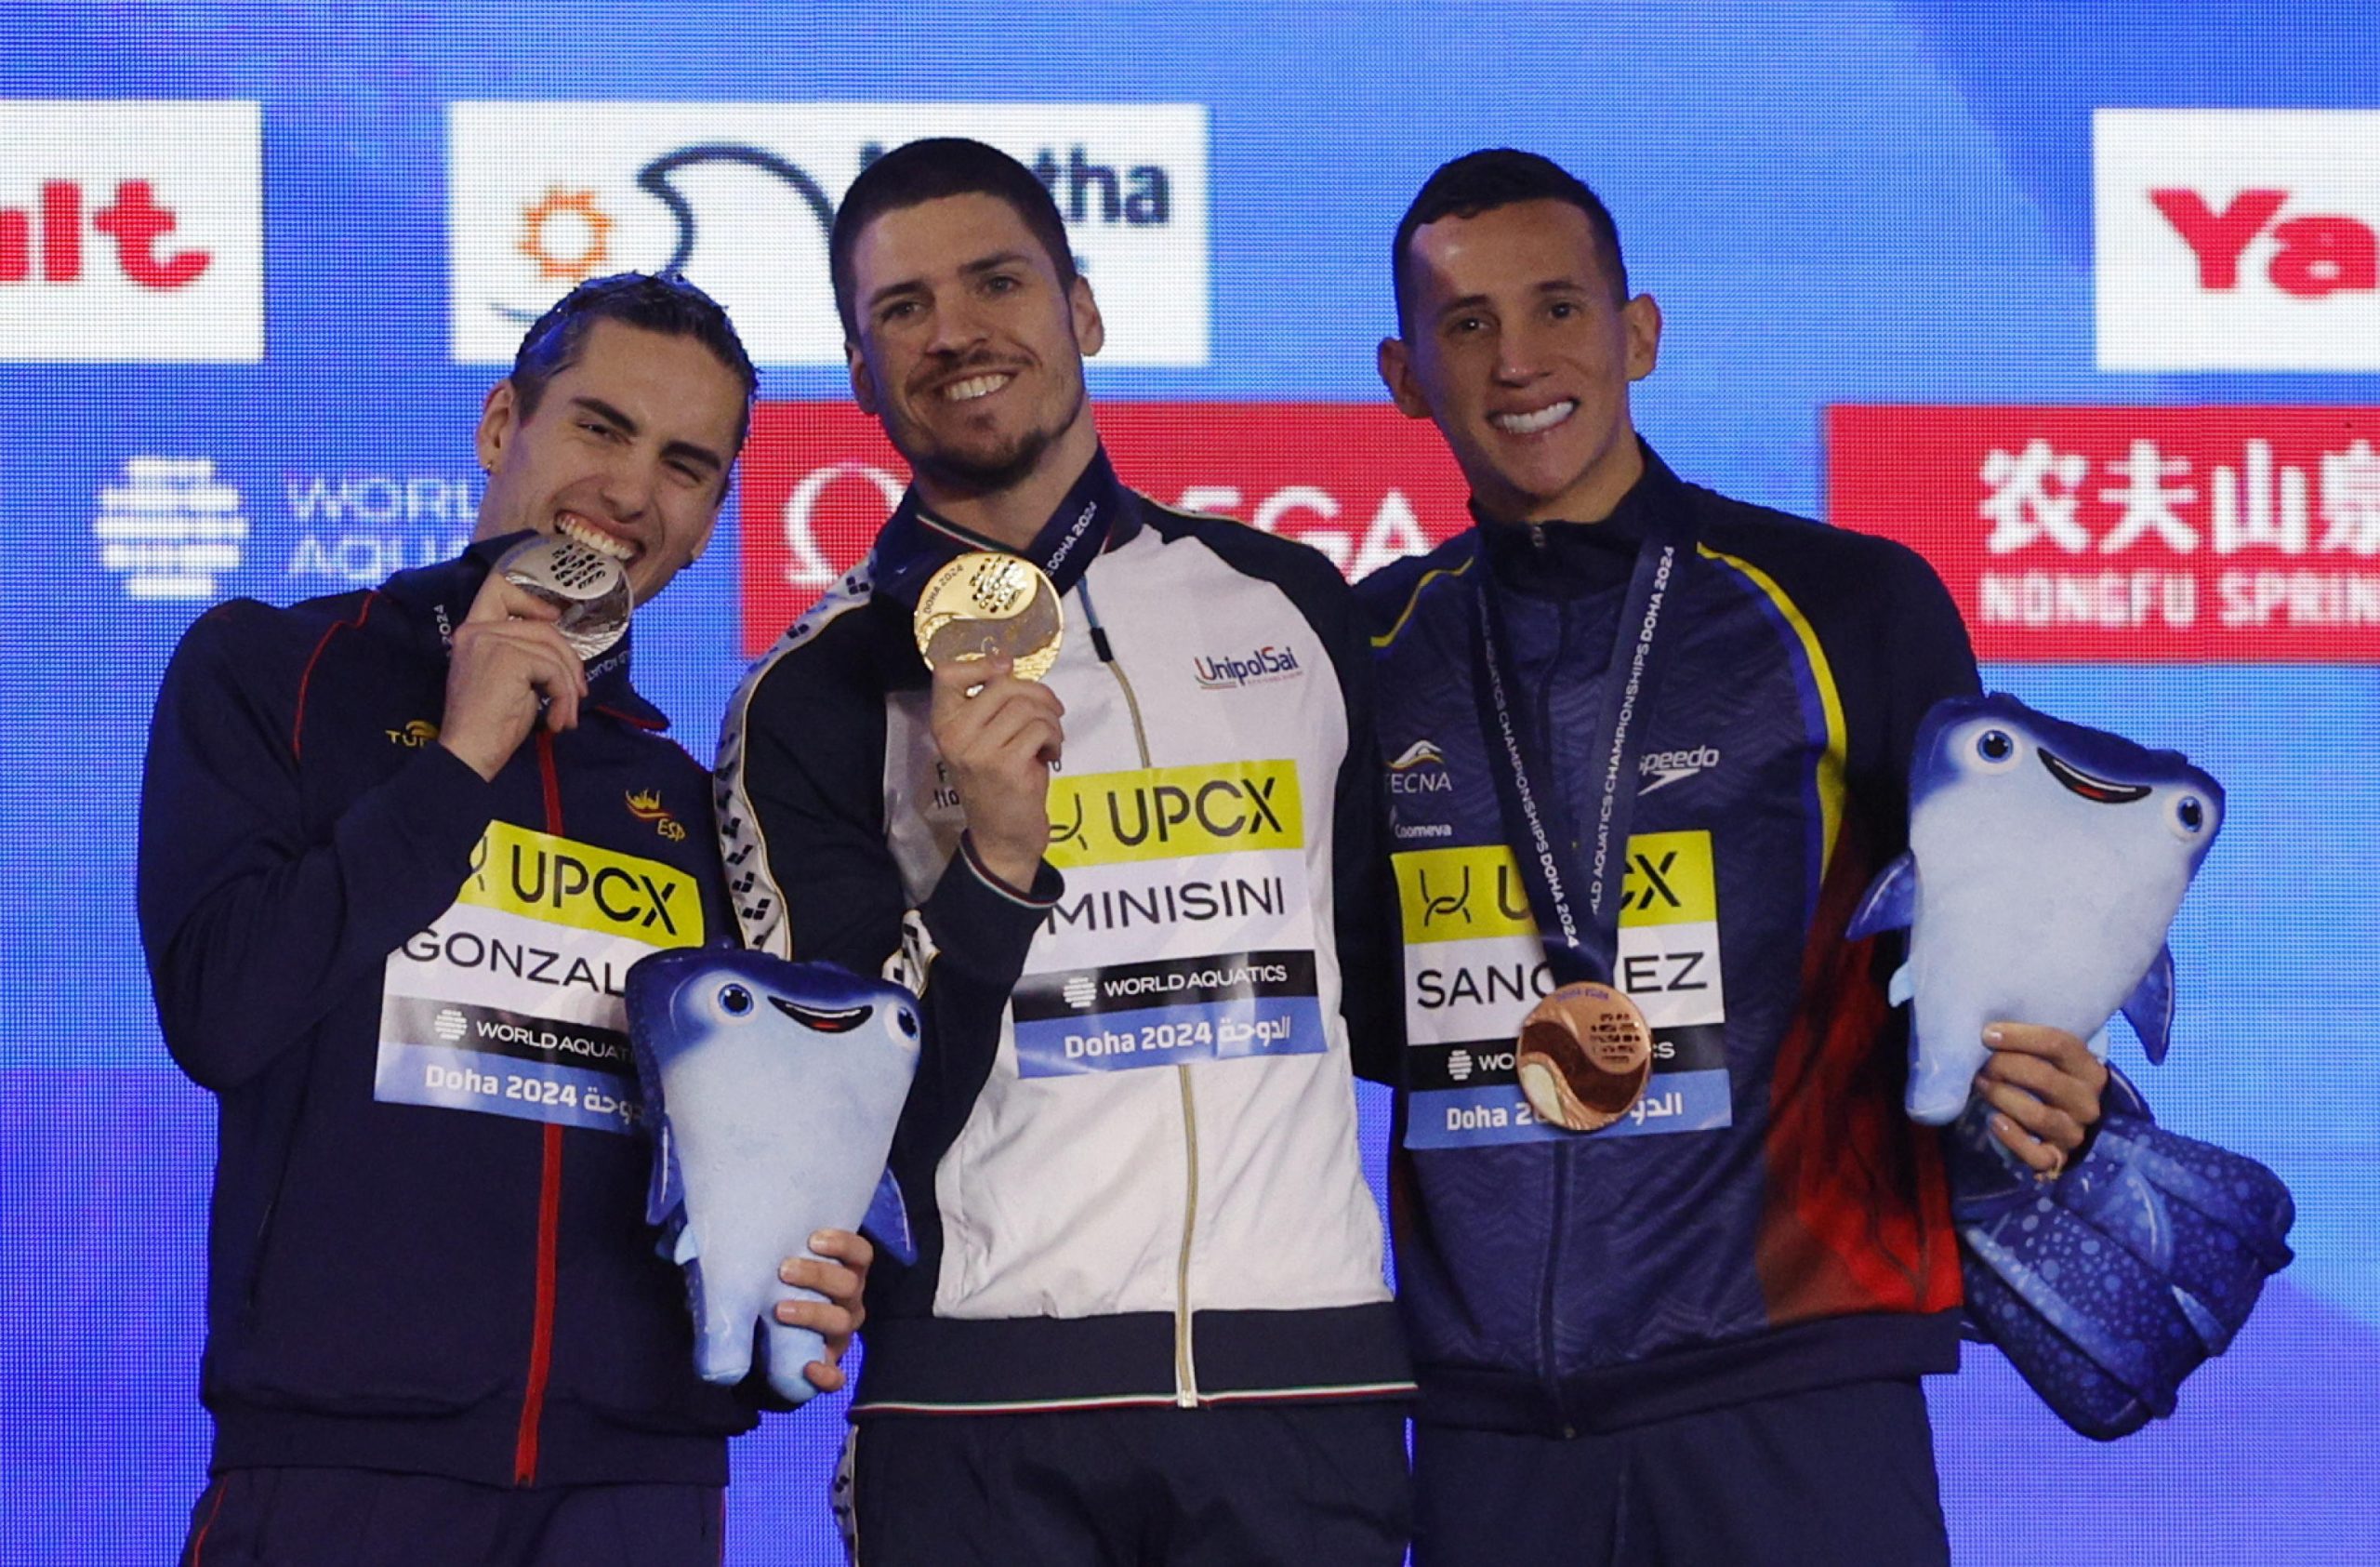 Il vincitore della medaglia d'oro nel solo libero maschile Giorgio Minisini festeggia sul podio insieme allo spagnolo Dennis Gonzalez Boney e al colombiano Gustavo Sanchez